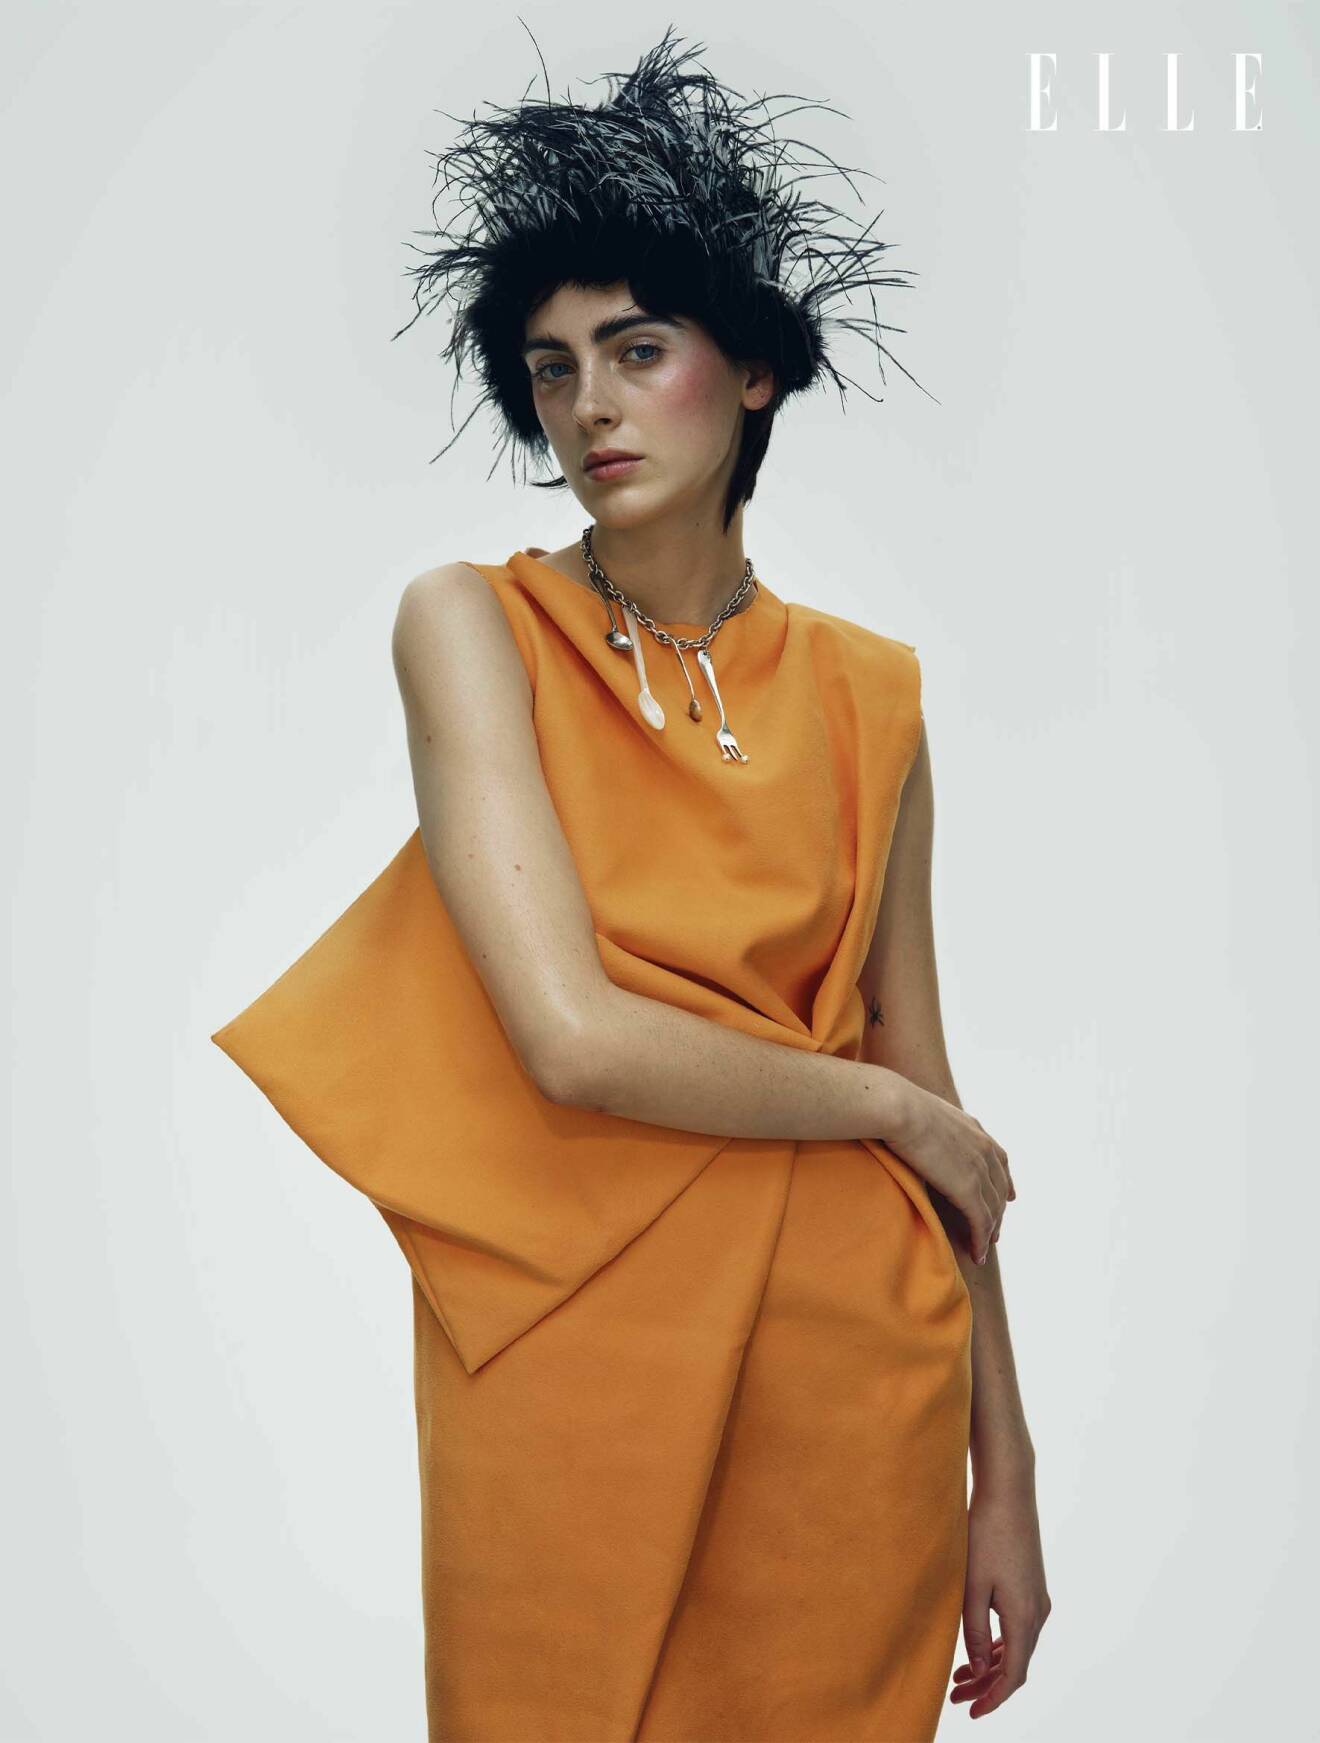 Modellen har på sig en orange klänning från Etre och en fjäderhatt från Nicklas Skovgaard